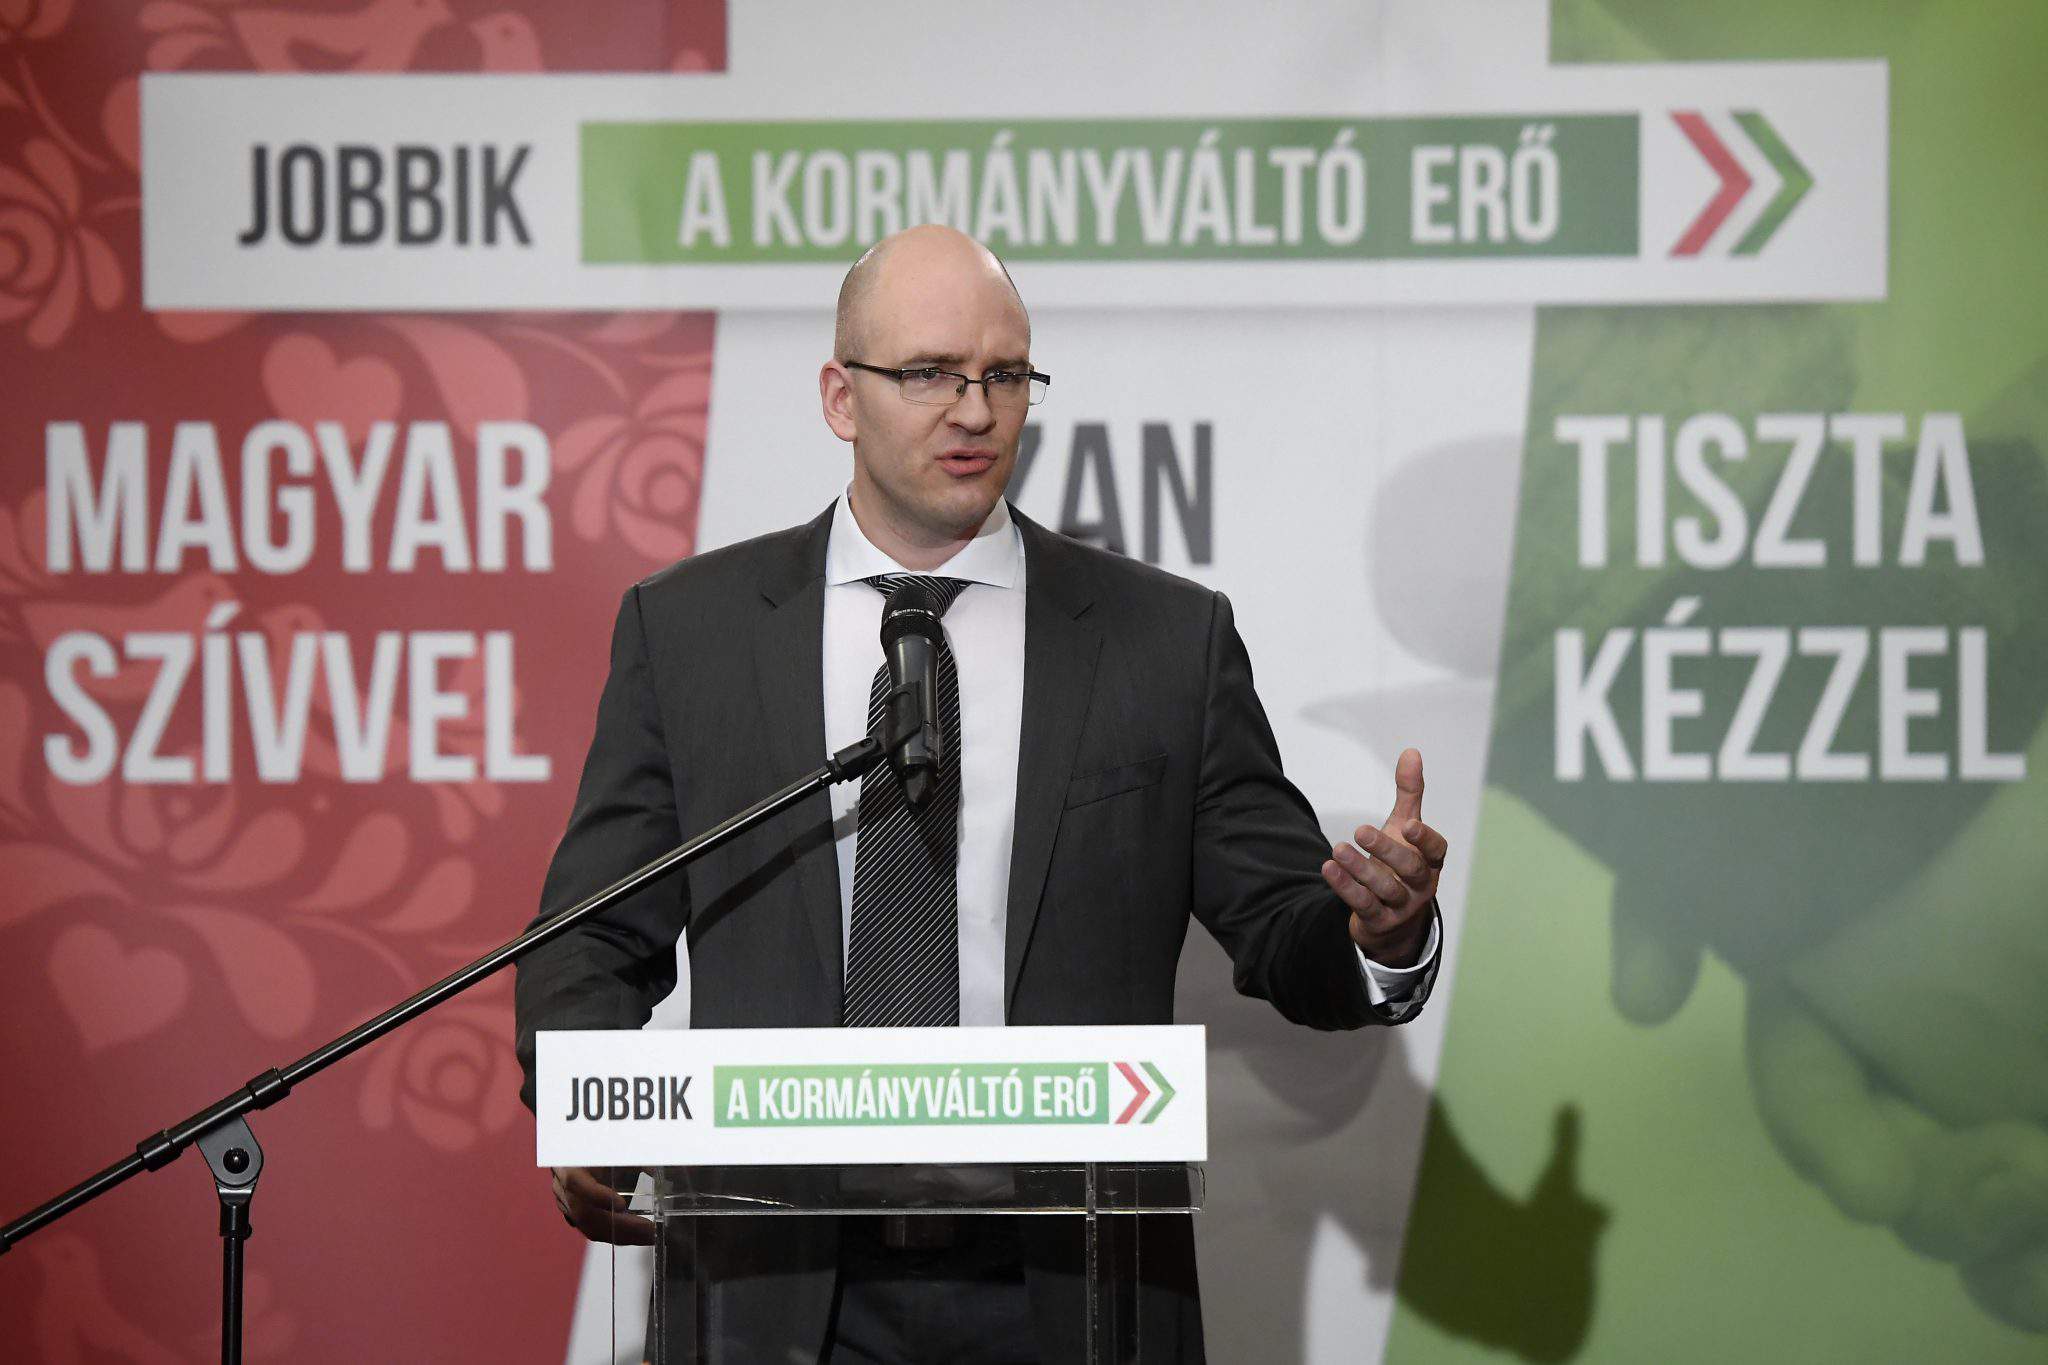 2018 年選舉 - Jobbik 對選舉結果提出上訴